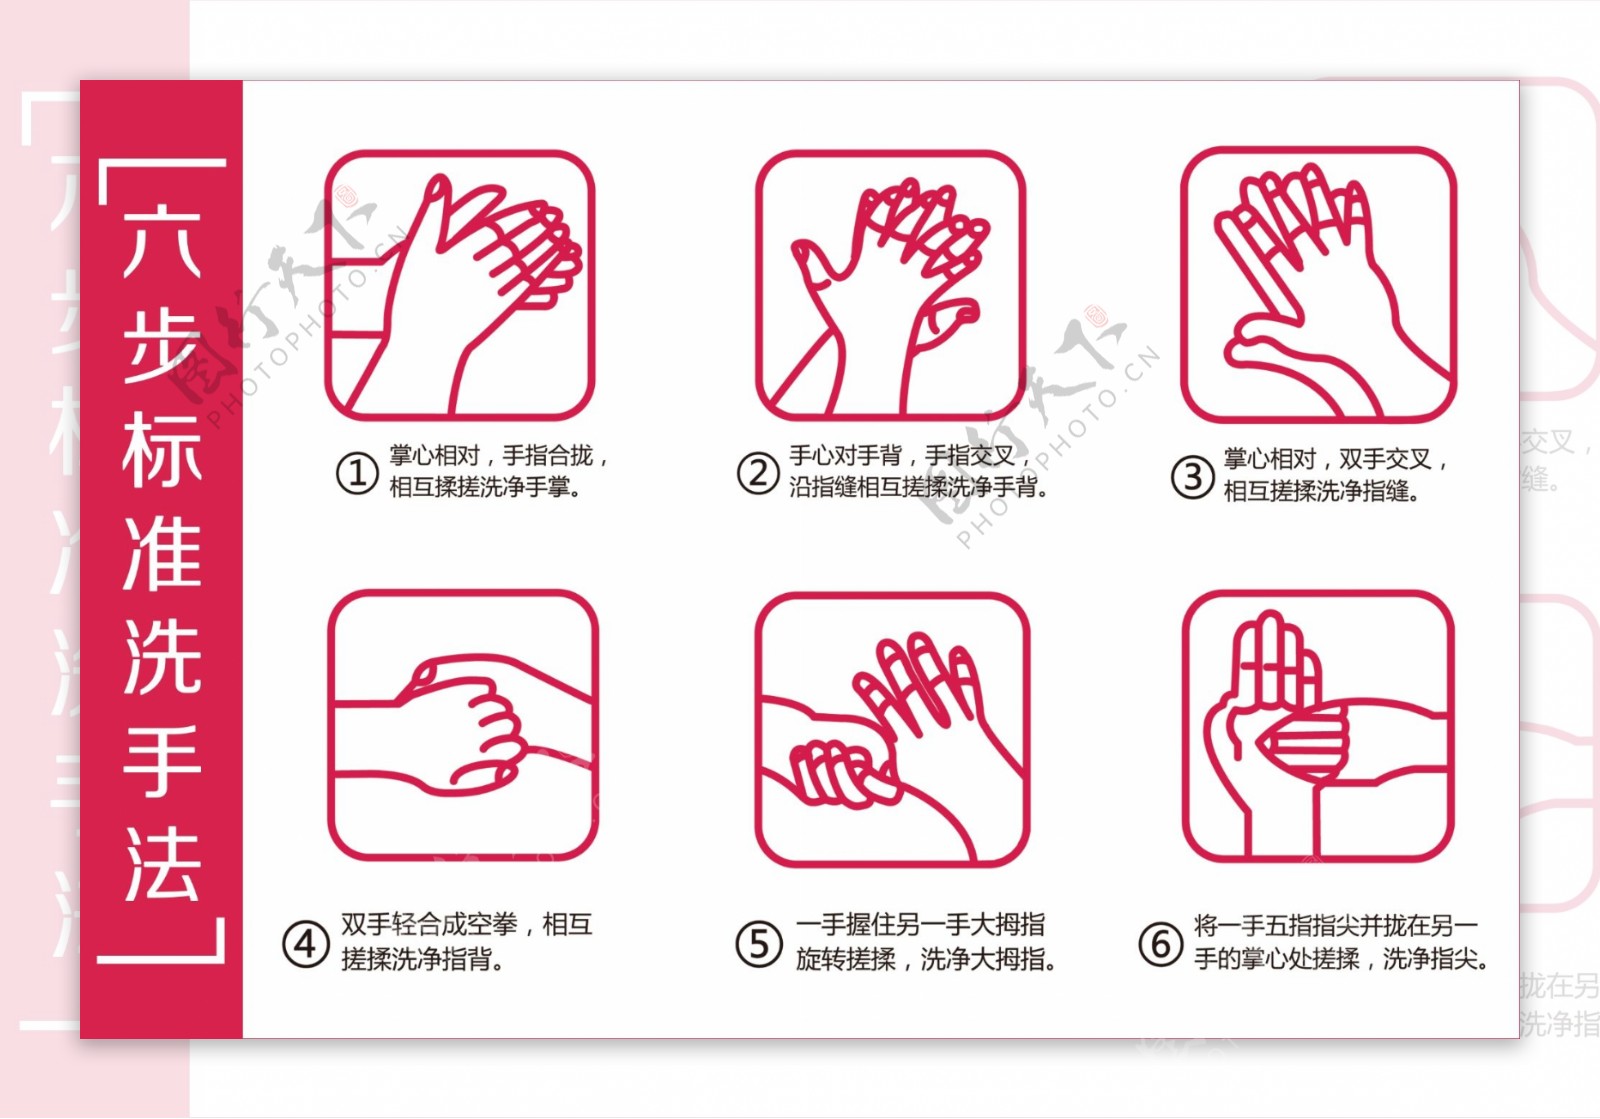 洗手六部法